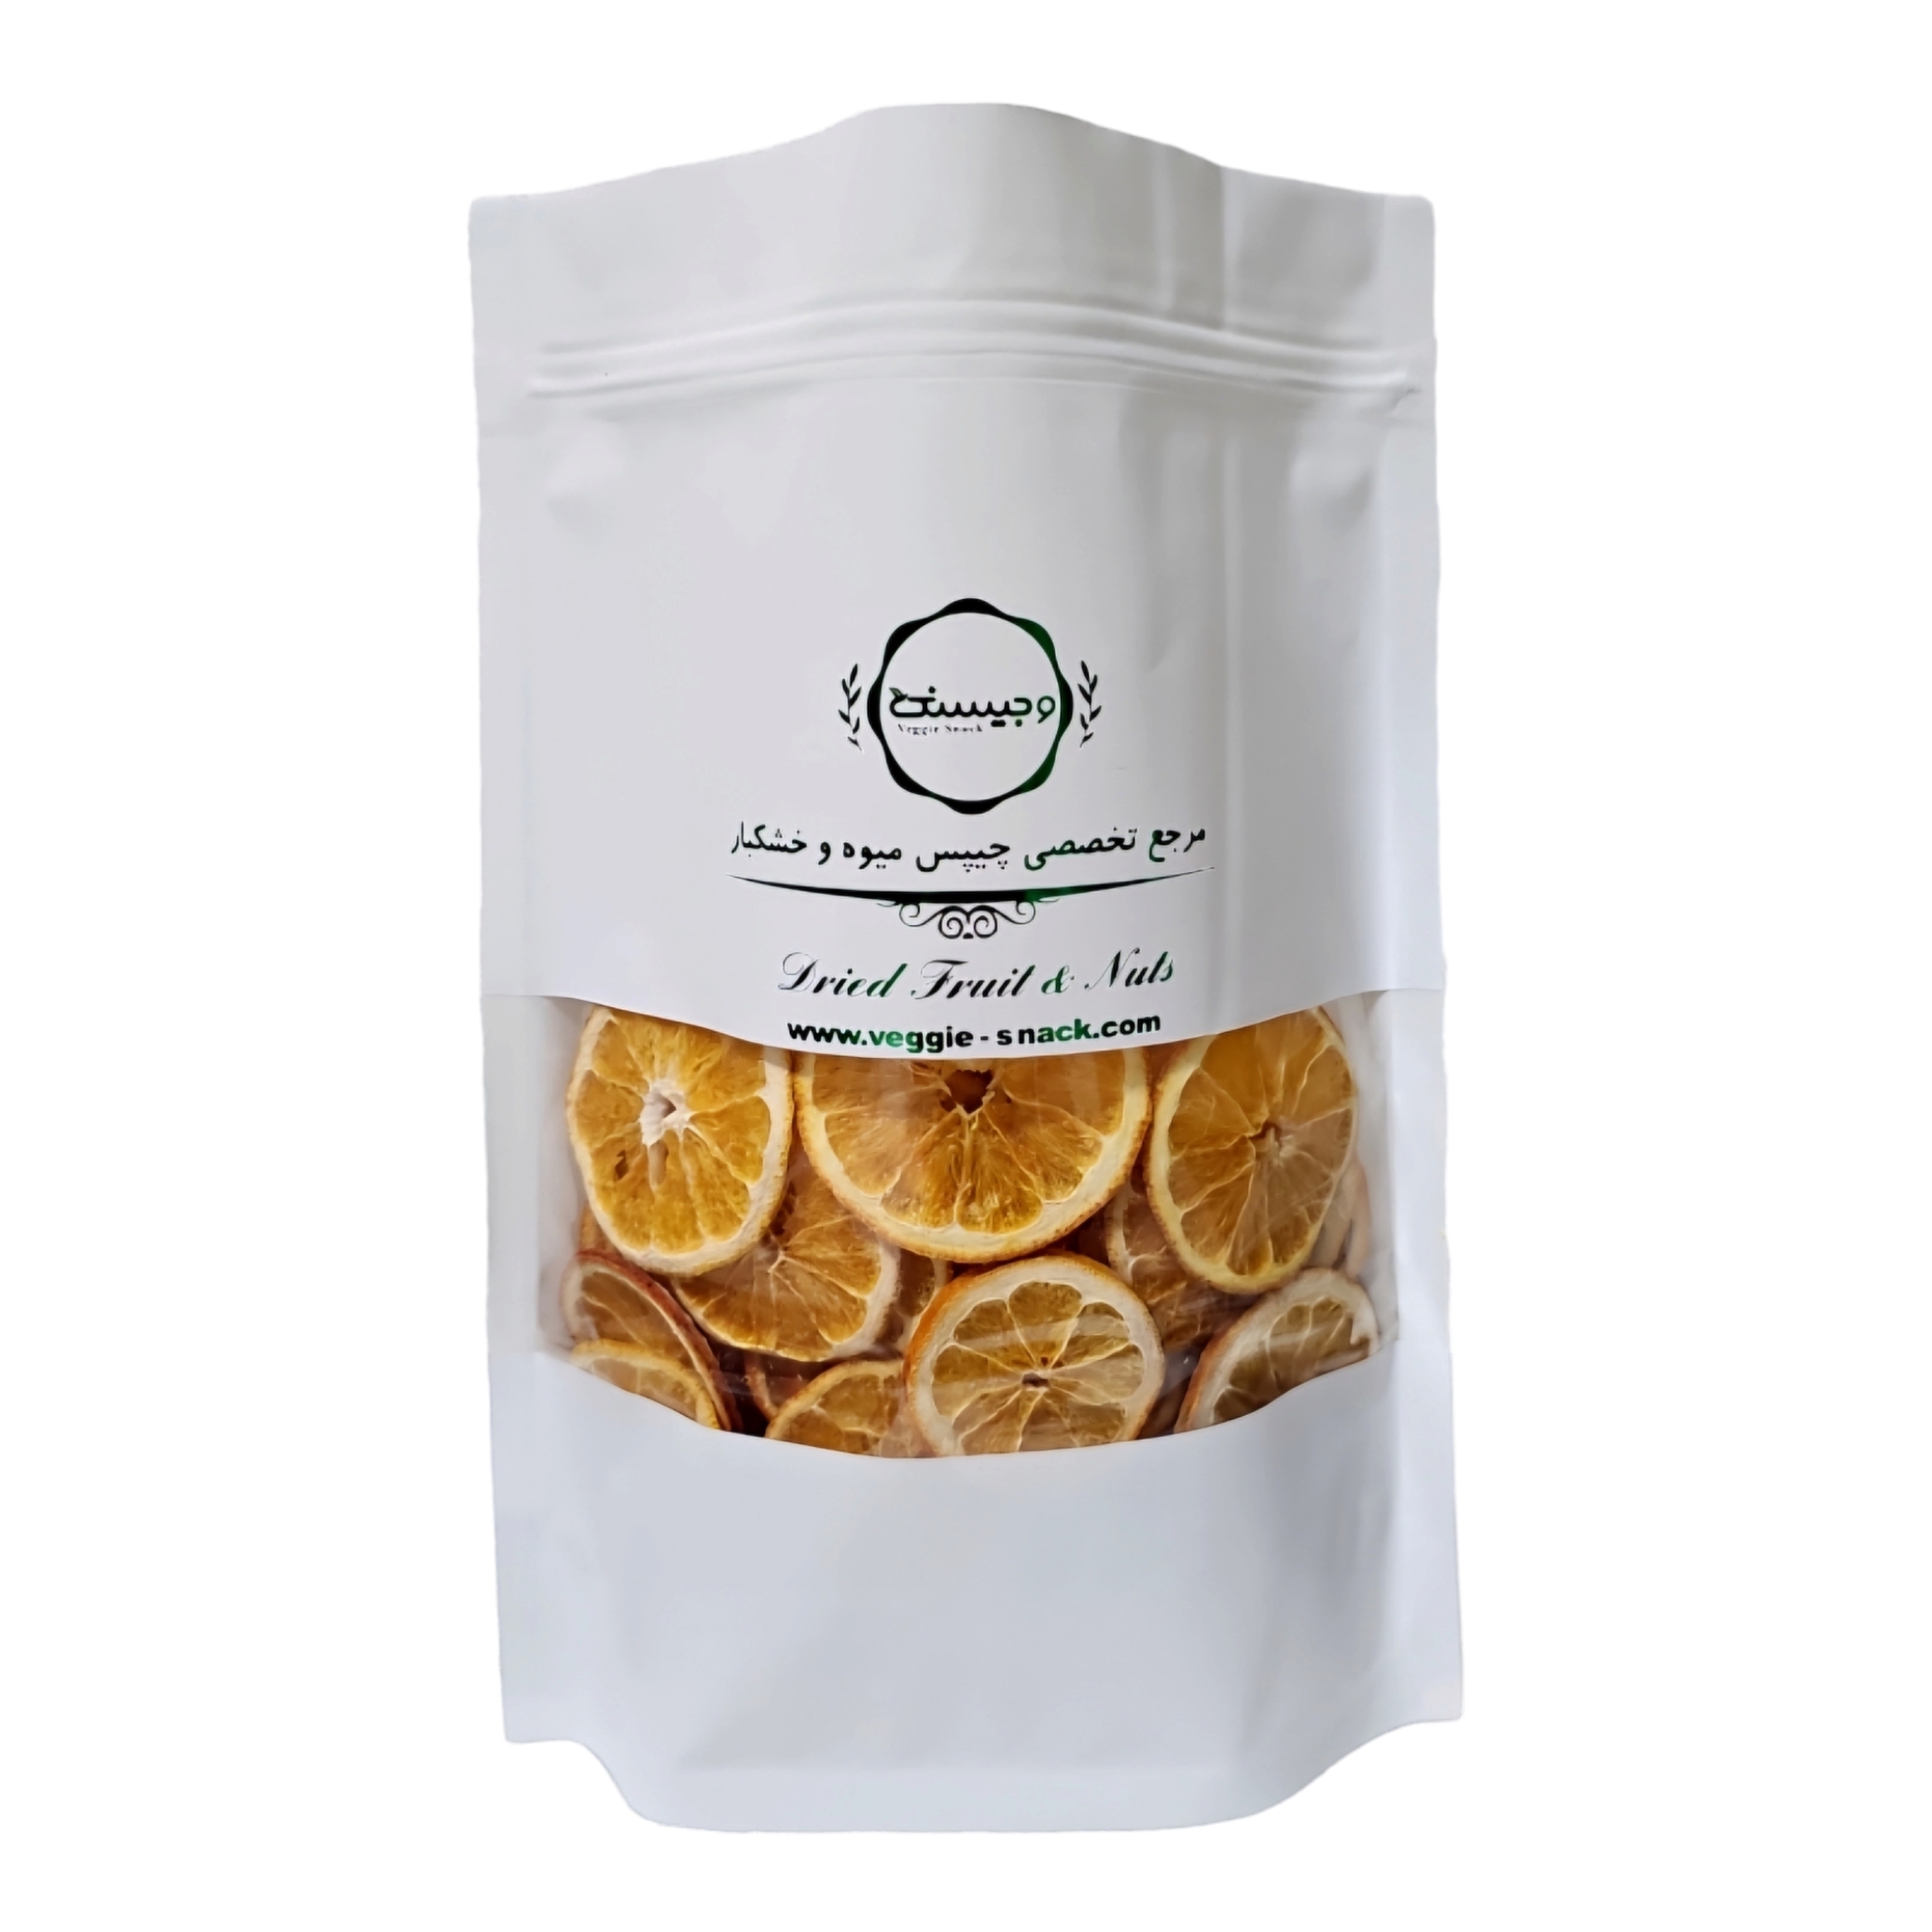  میوه خشک پرتقال تامسون اسلایس قیمت عمده میوه خشک ایرانی و حبه استوایی 1403 وجیسنک کارخانه 